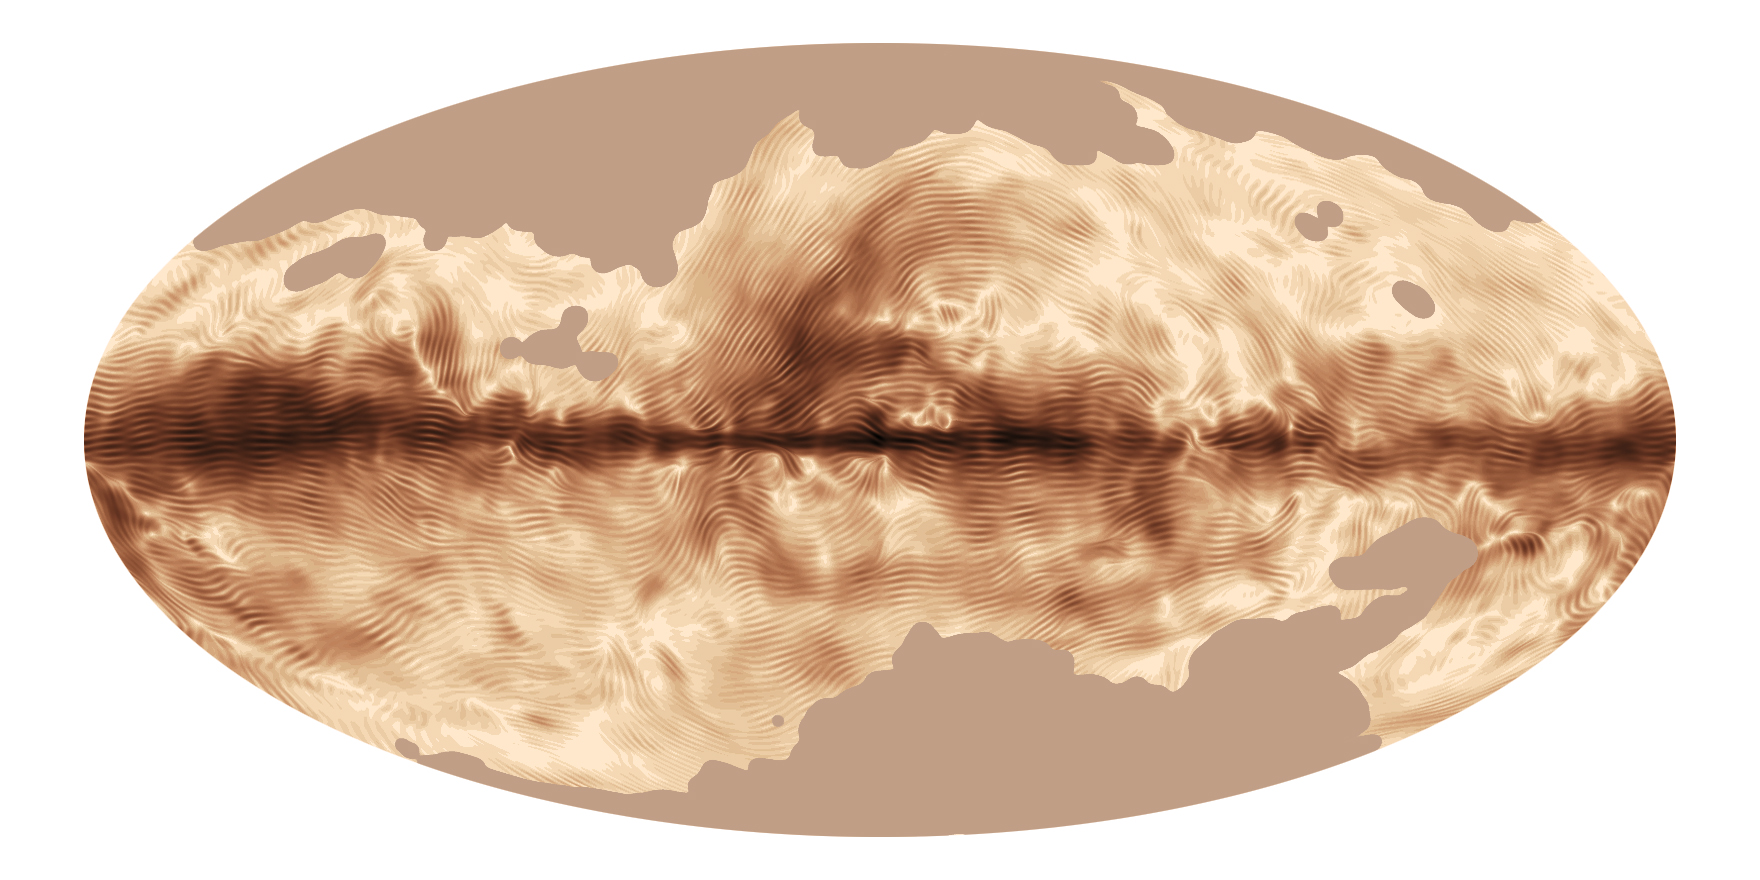 خريطة جديدة 3D من مجرة درب التبانة سوف تساعد على حل أسرار الكون